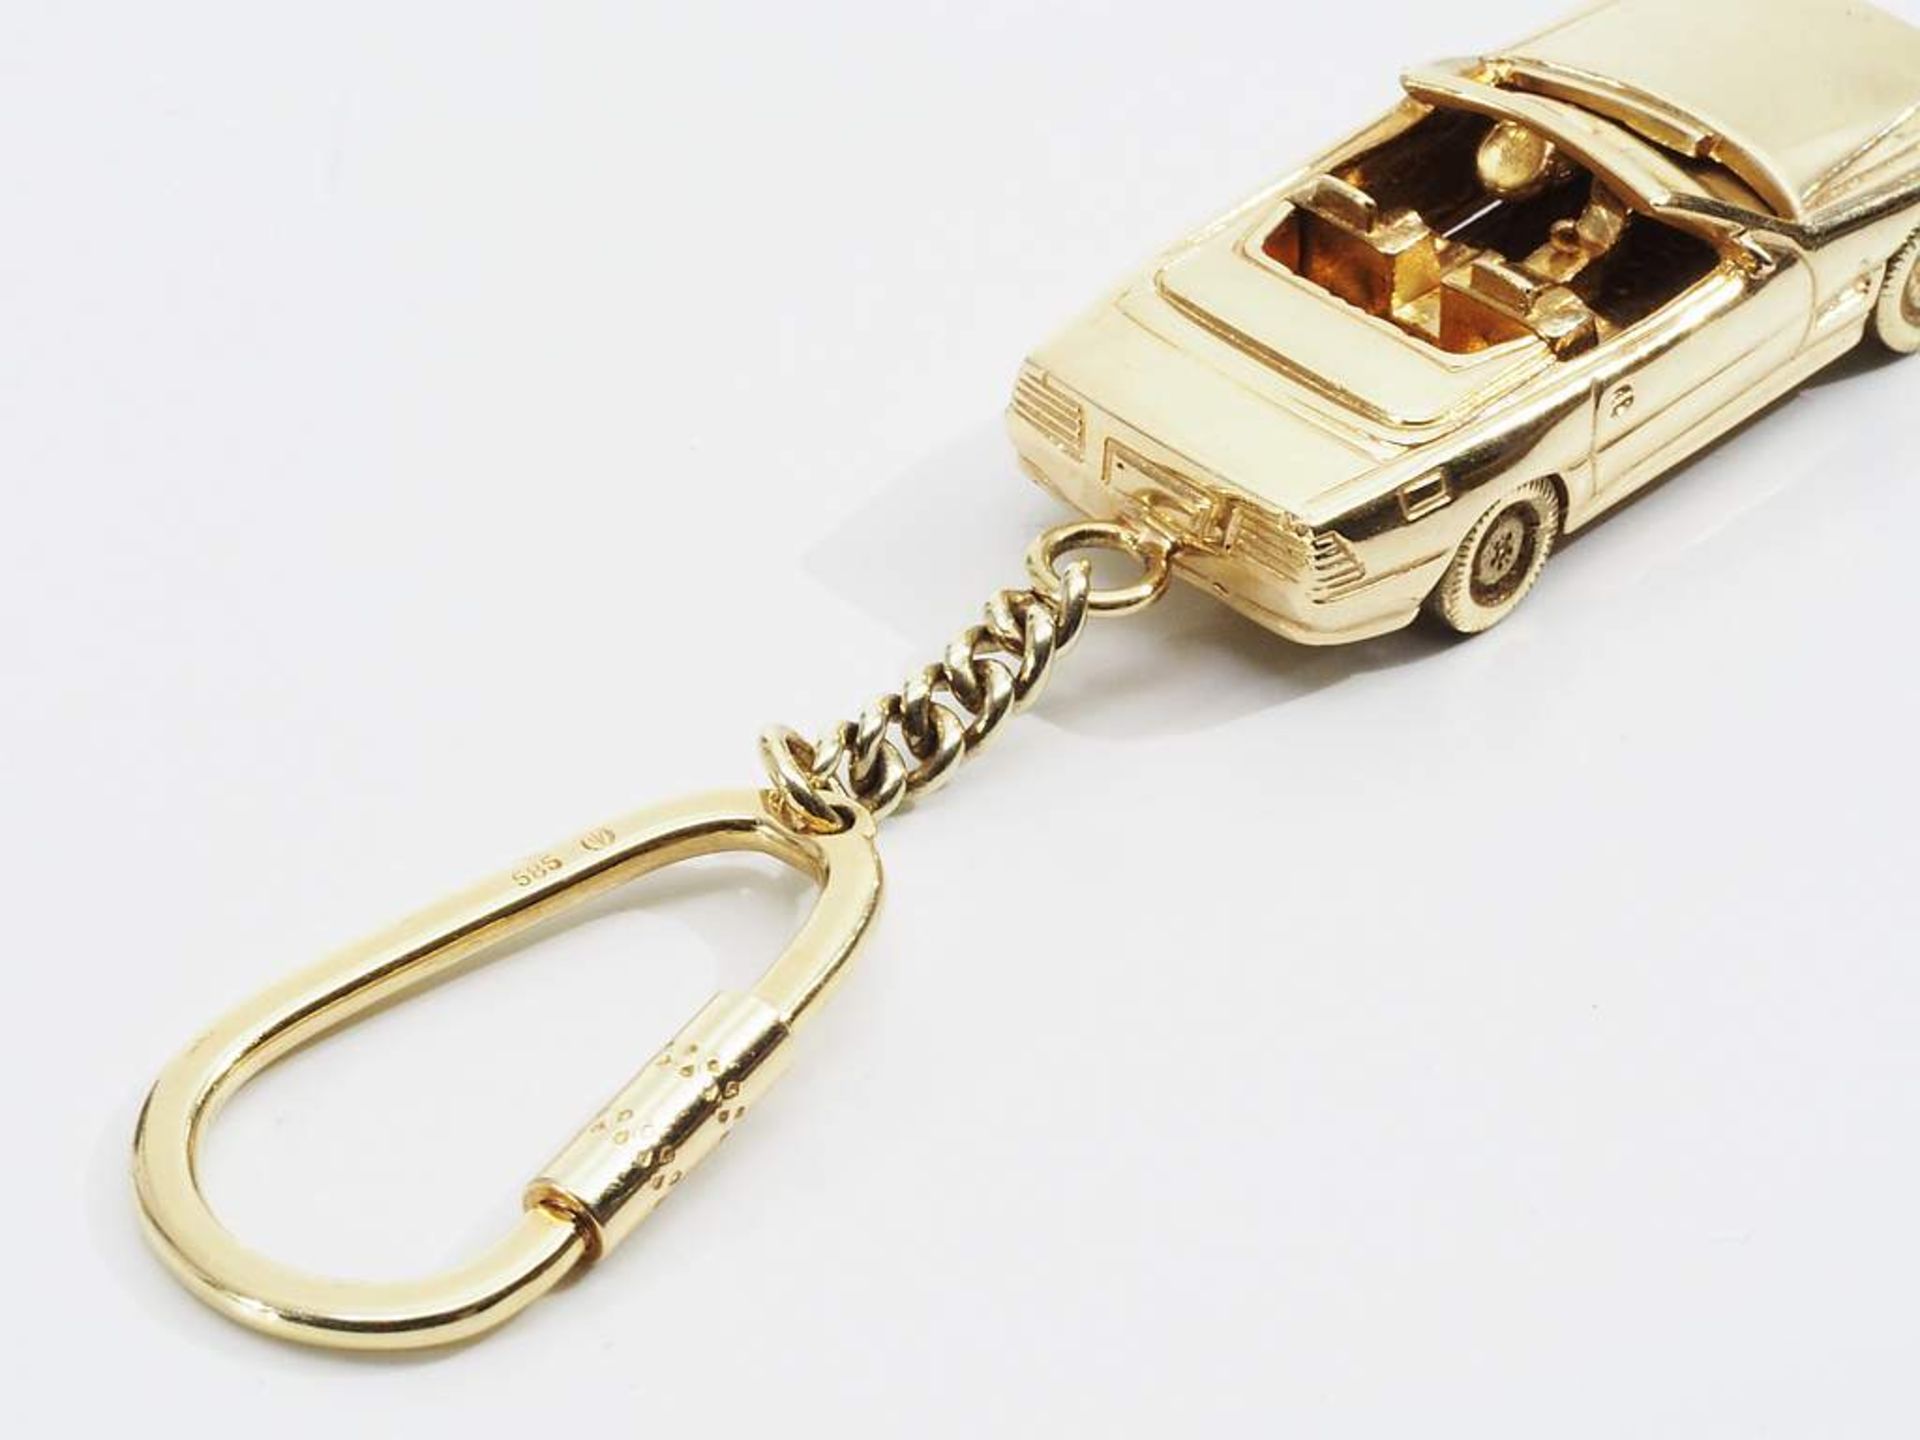 Schlüsselanhänger mit Modellauto "MERCEDES SL Cabrio". 585er Gelbgold. - Image 5 of 6